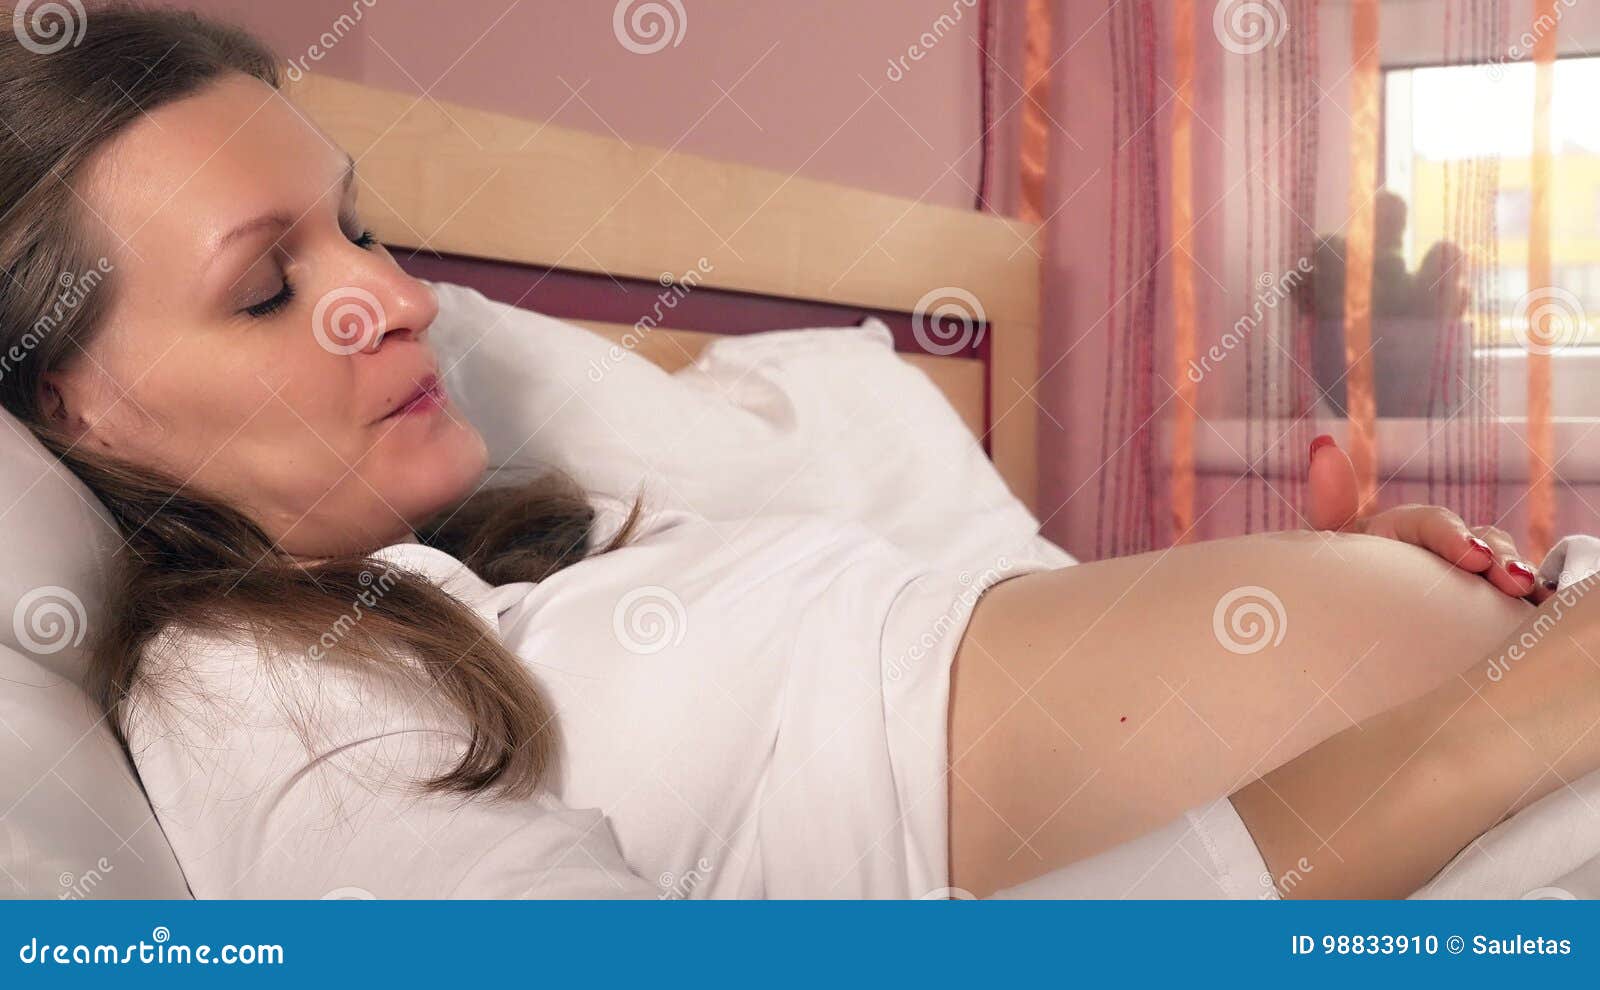 помогает ли мастурбация заснуть фото 29